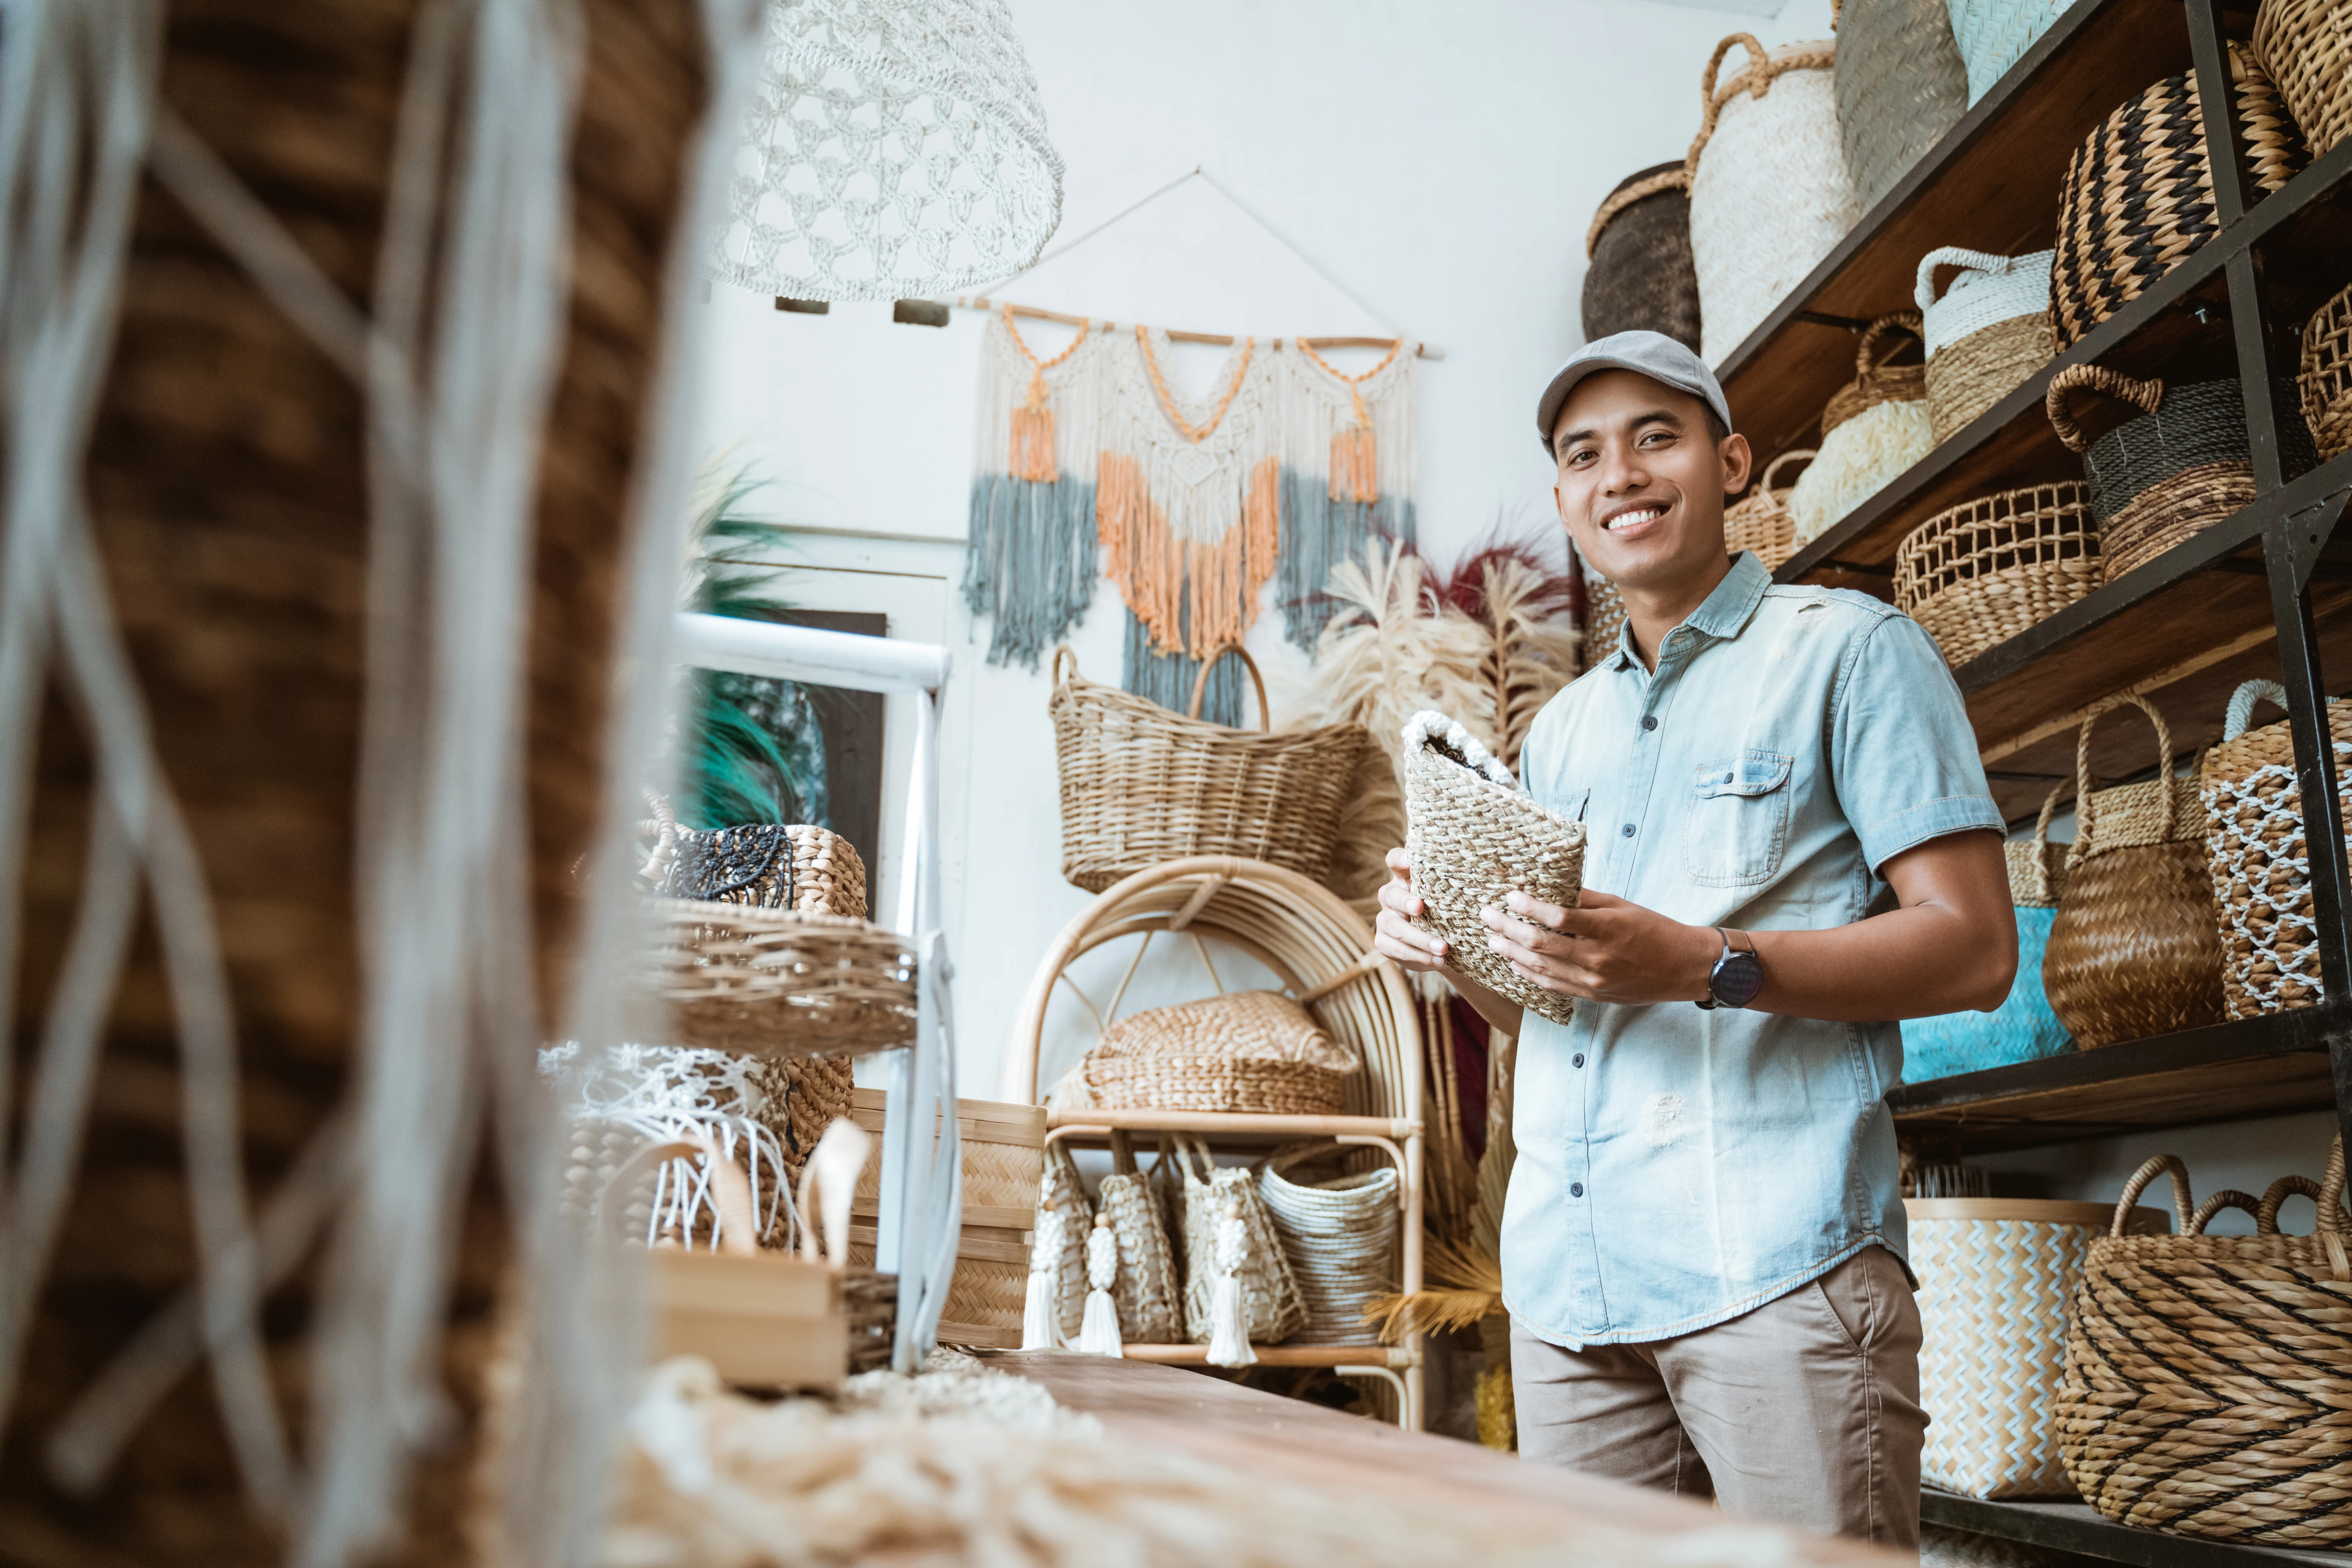 jovem empreendedor sorri enquanto segura uma carteira de vime em uma loja de artesanato